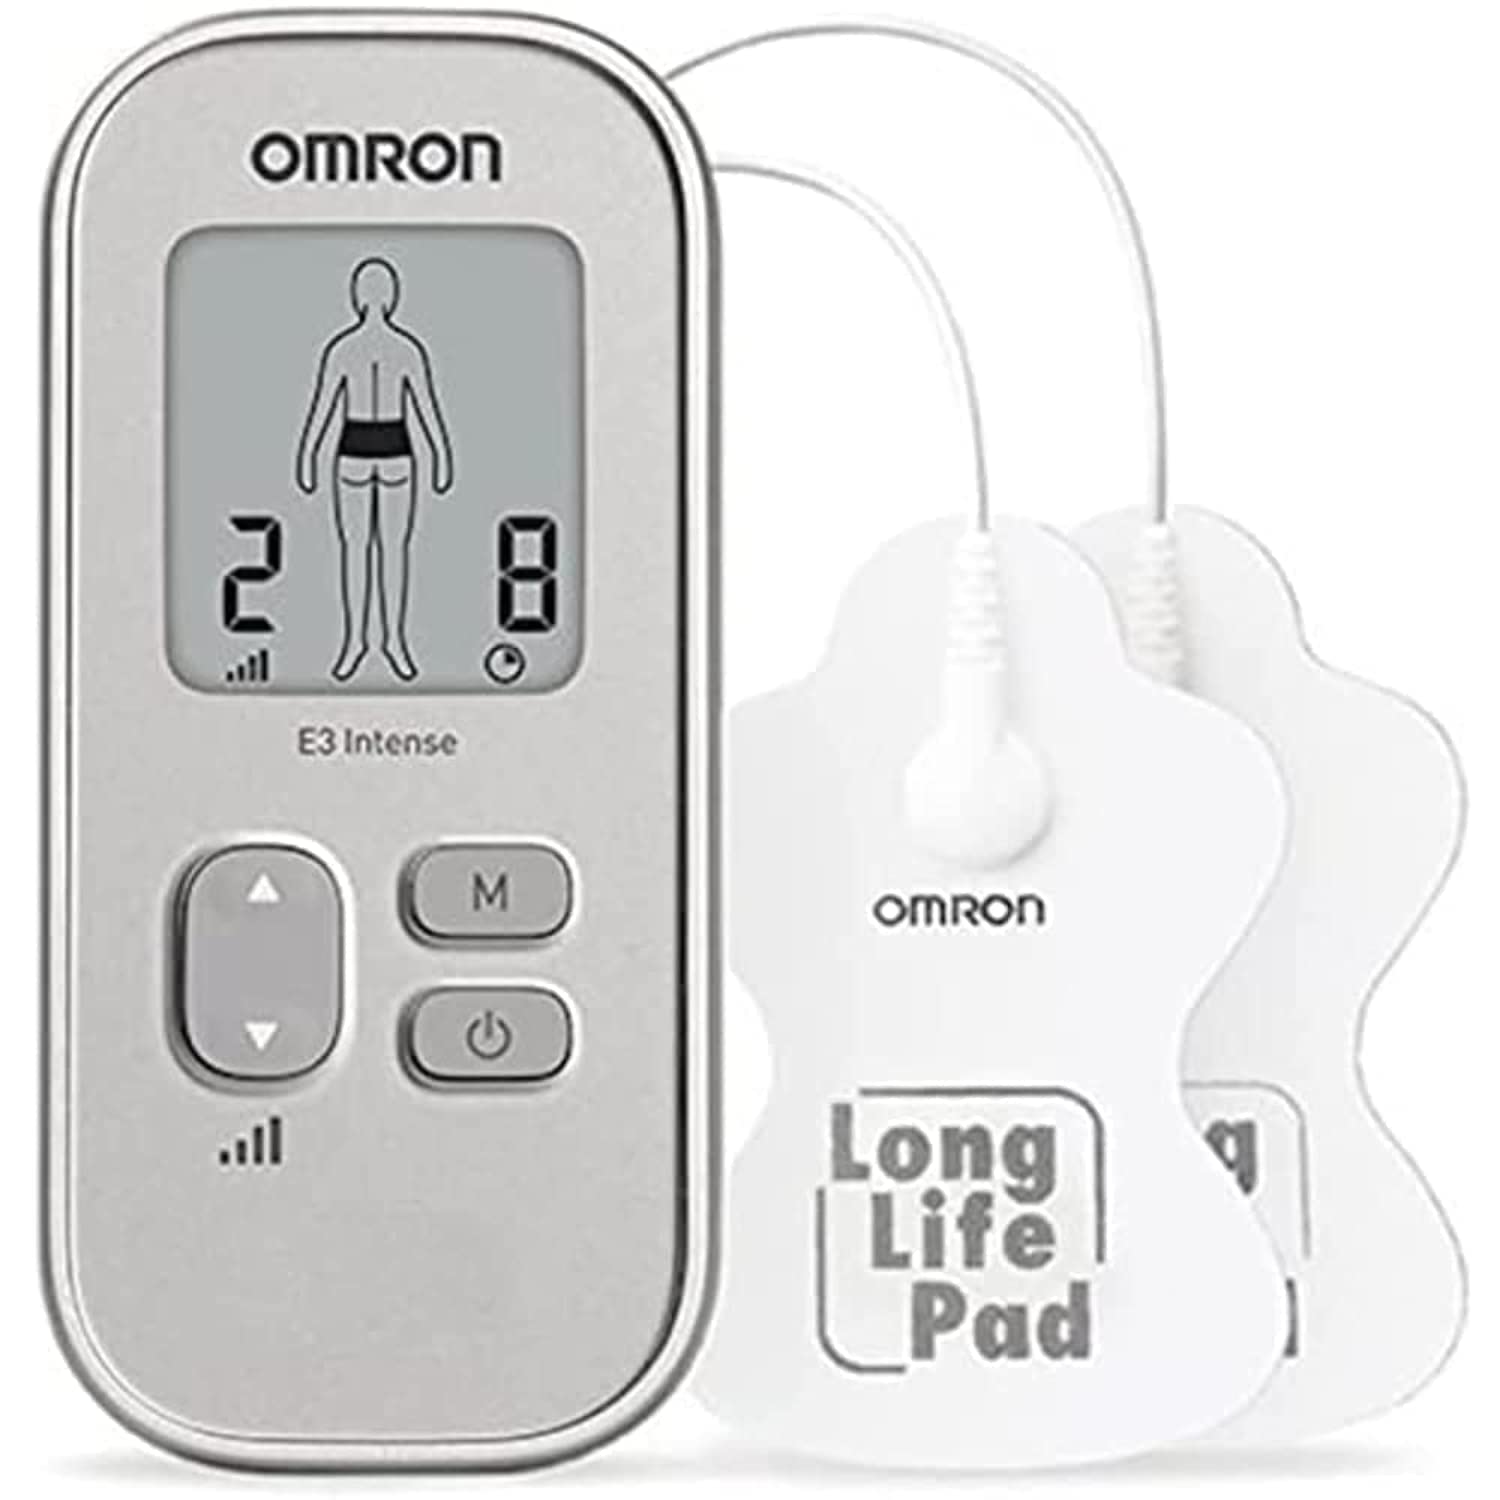 OMRON E3 Intense – tragbares Schmerztherapiegerät mit klinisch geprüfter TENS Technologie, kompaktes Design für den Einsatz zu Hause und unterwegs, für verschiedene Körperregionen geeignet